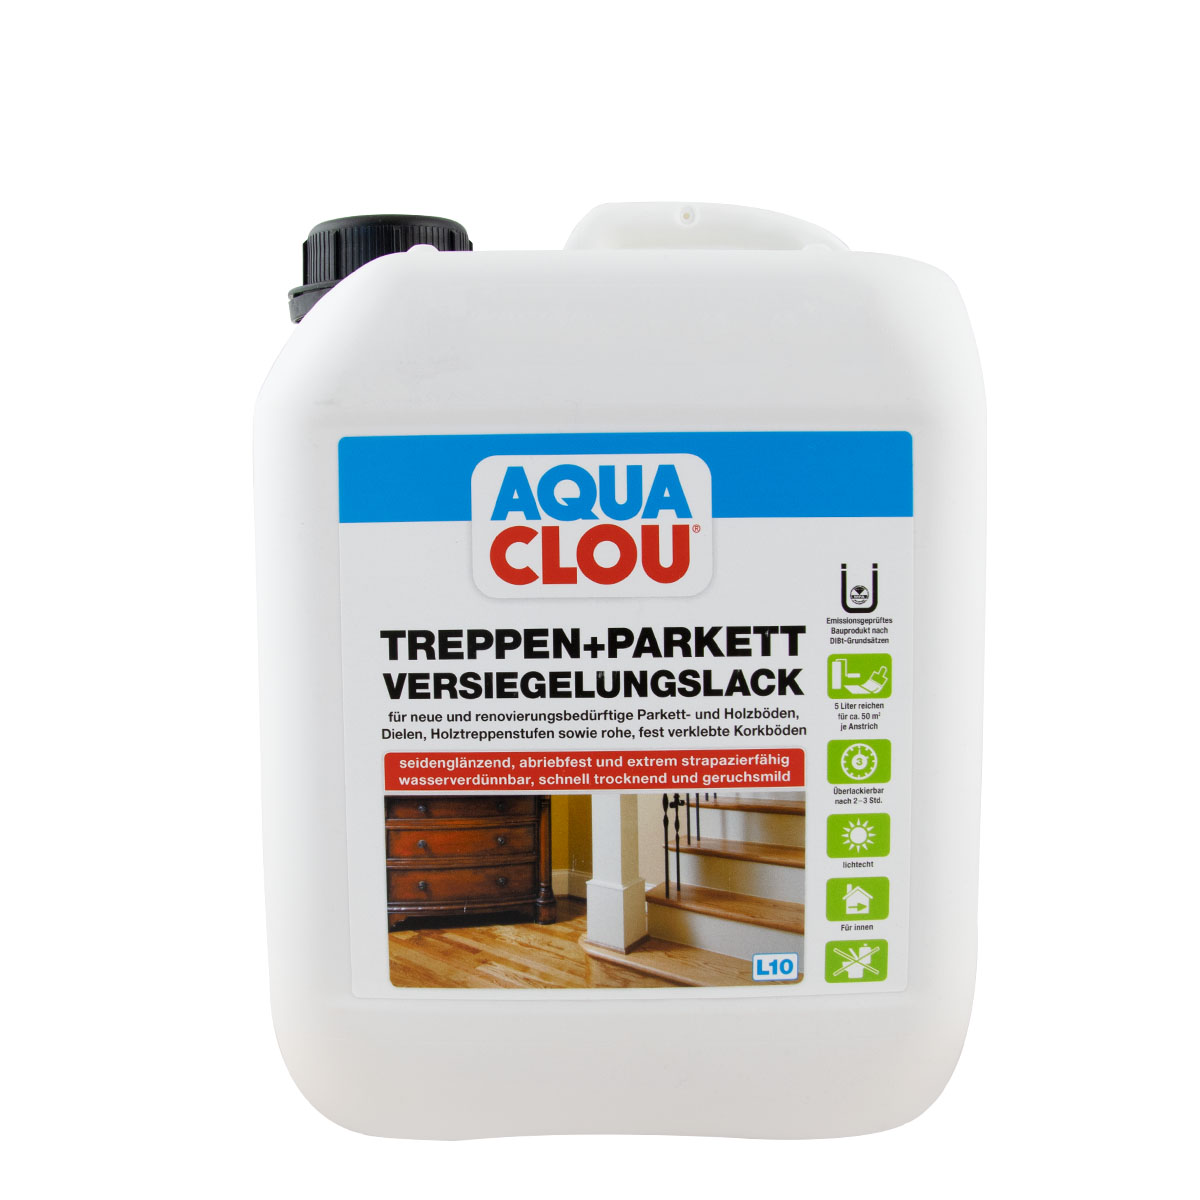 Clou Aqua Treppen- und Parkett Versiegelungslack 5L L10; seidenglänzend